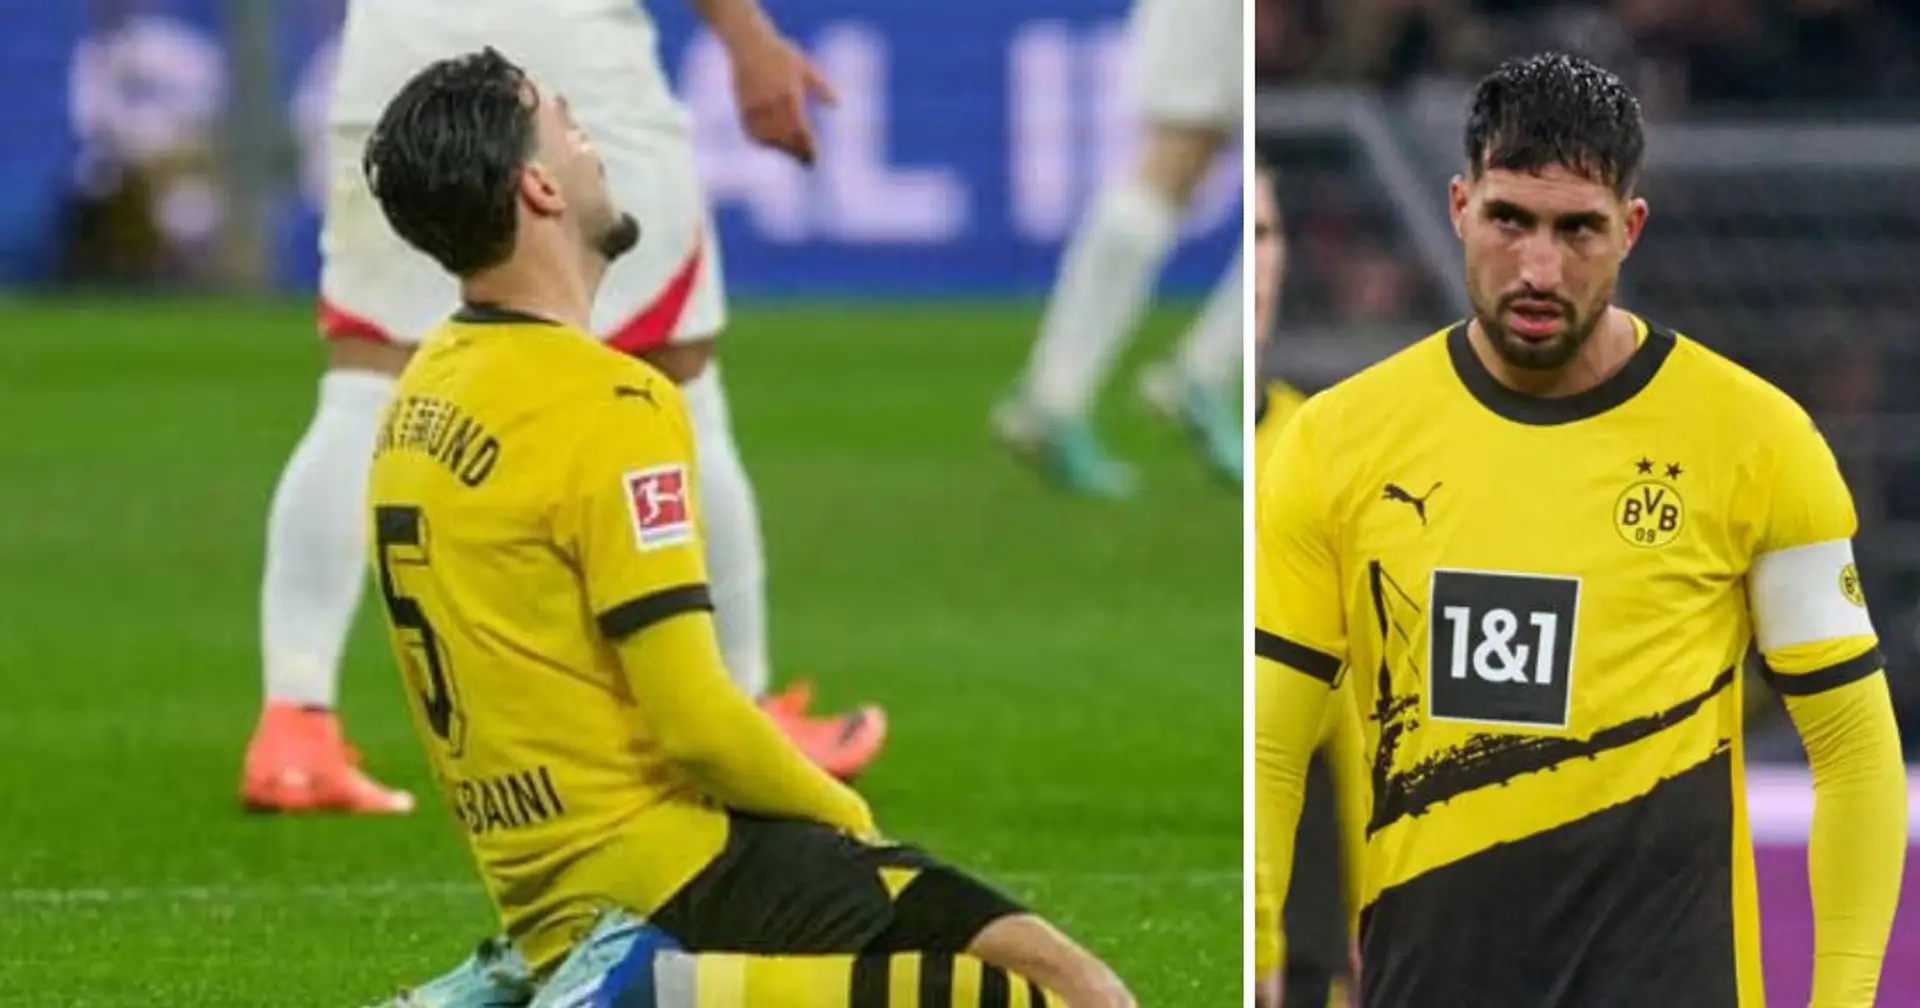 Comment va Dortmund à 3 jours du match décisif contre le PSG ? Réponse